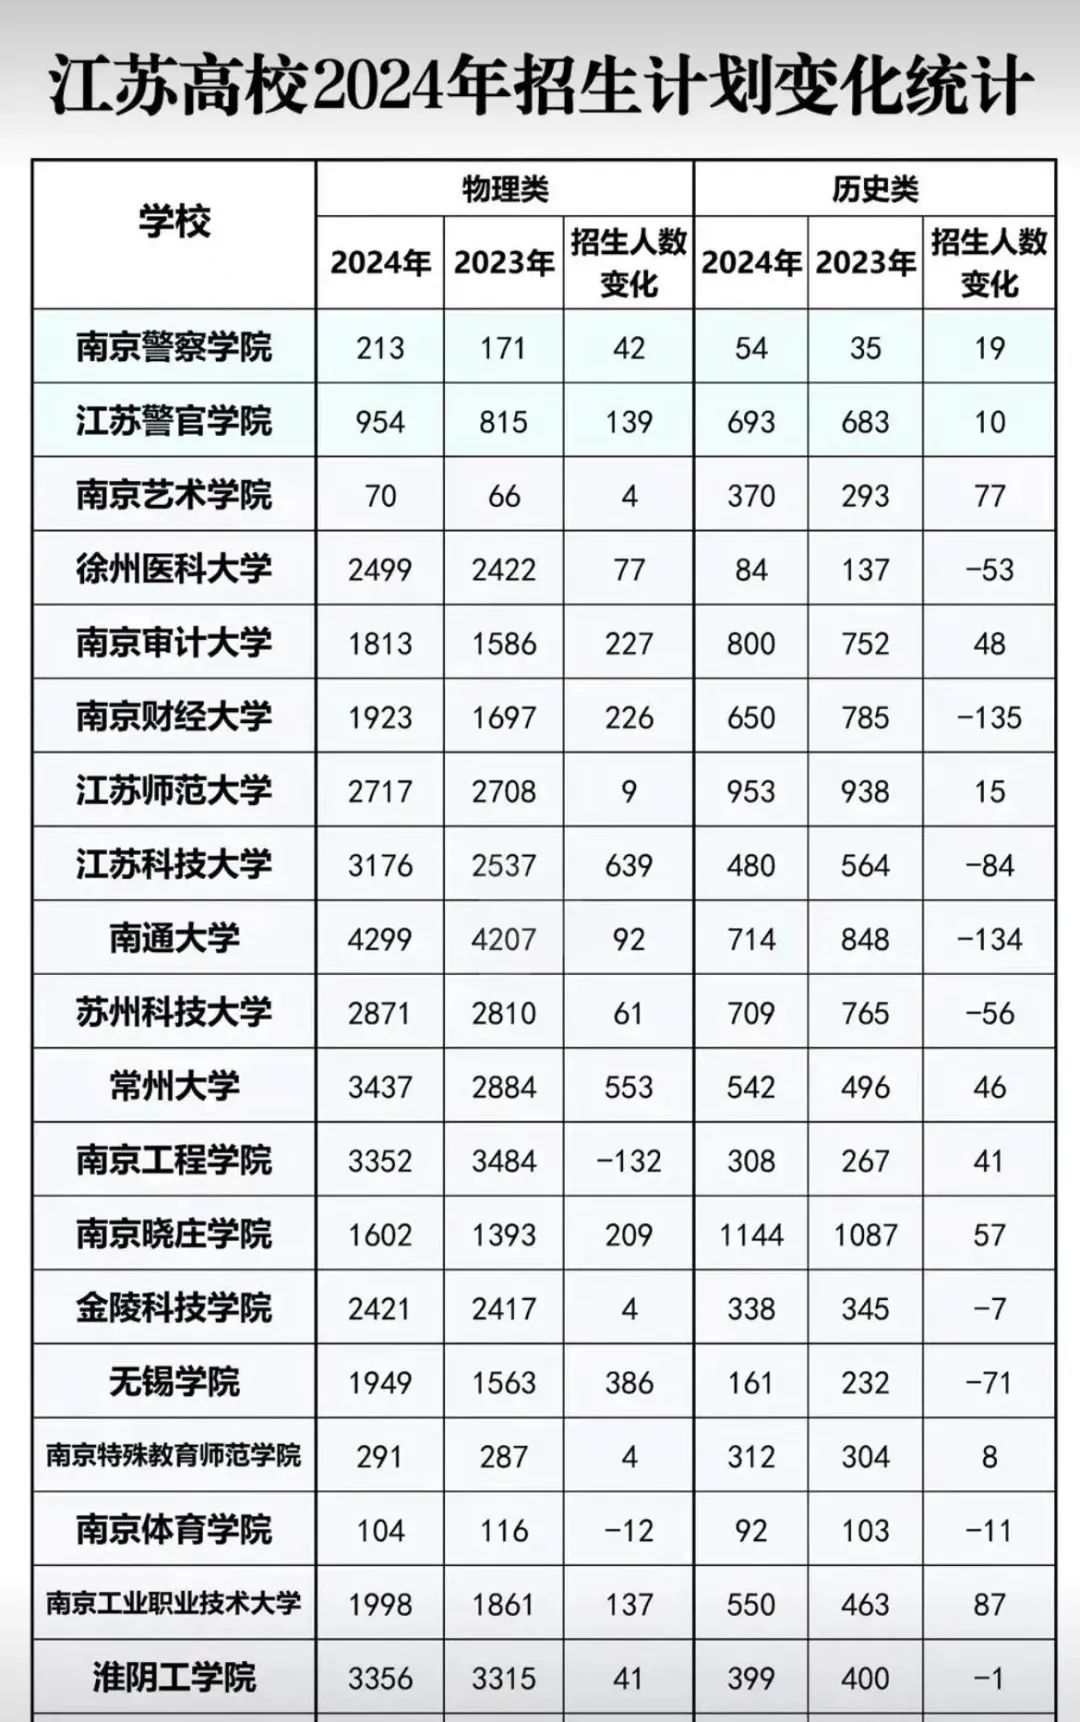 江苏高校2024年招生计划变化统计